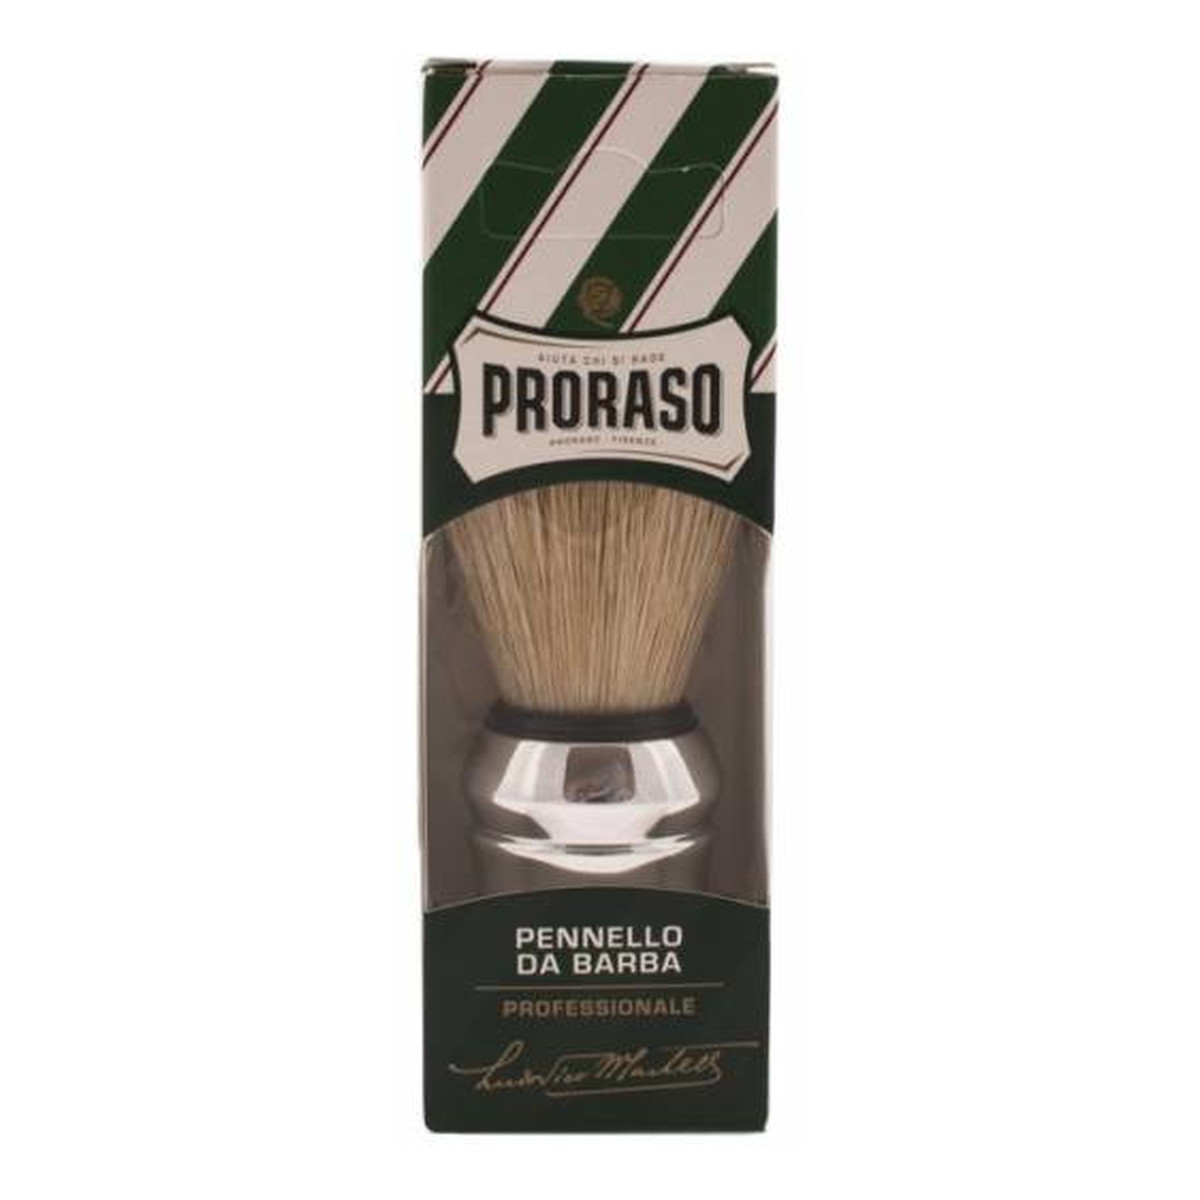 Proraso Pennello Da Barba profesjonalny pędzel do golenia z naturalnej szczeciny